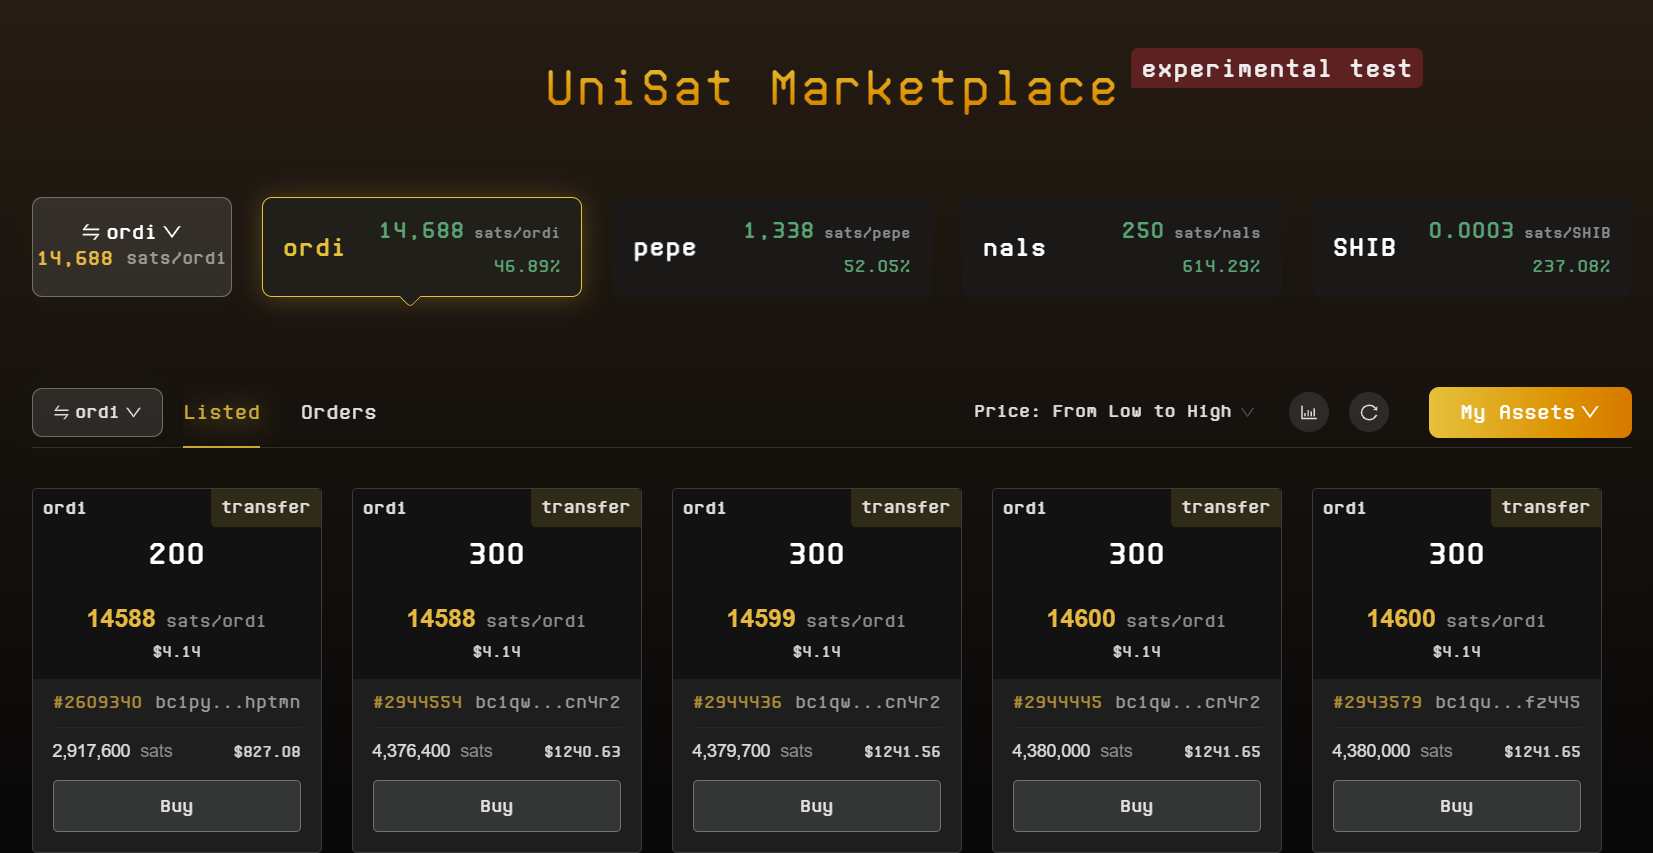 UniSat Marketplace Experimental Testing